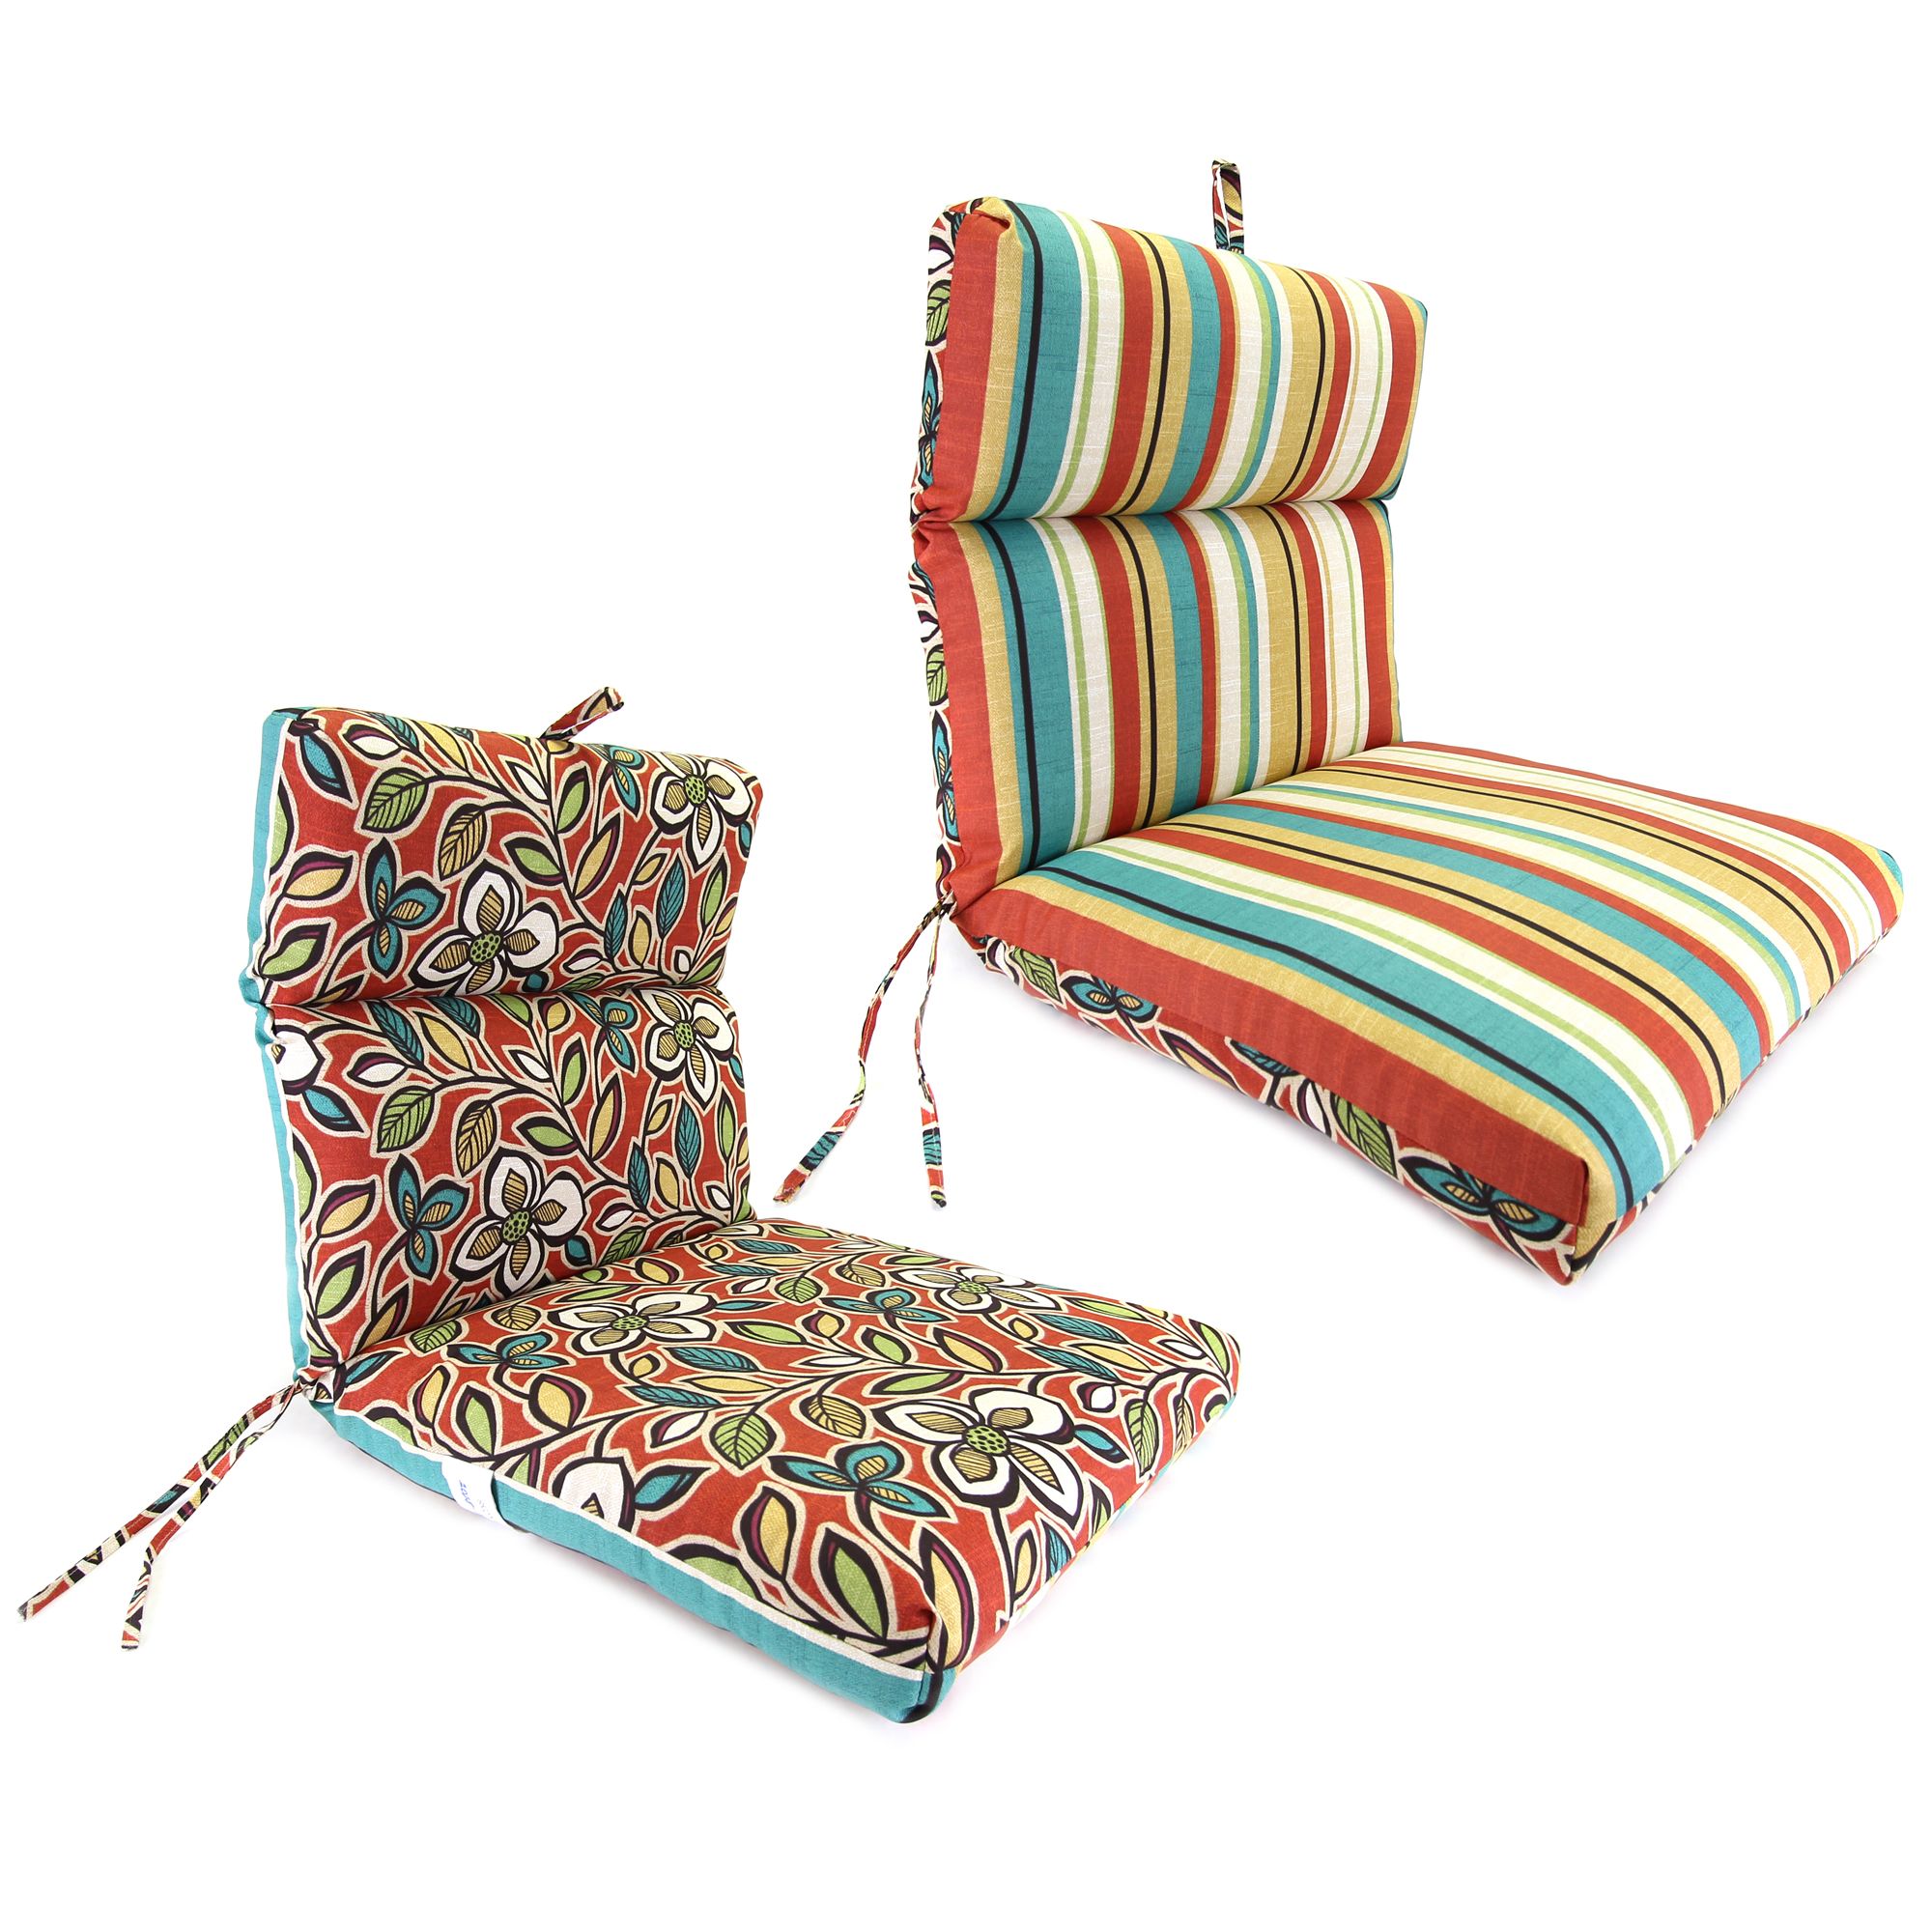 Ethan/Wyken Stripe Scarlet French Edge Chair Cushion